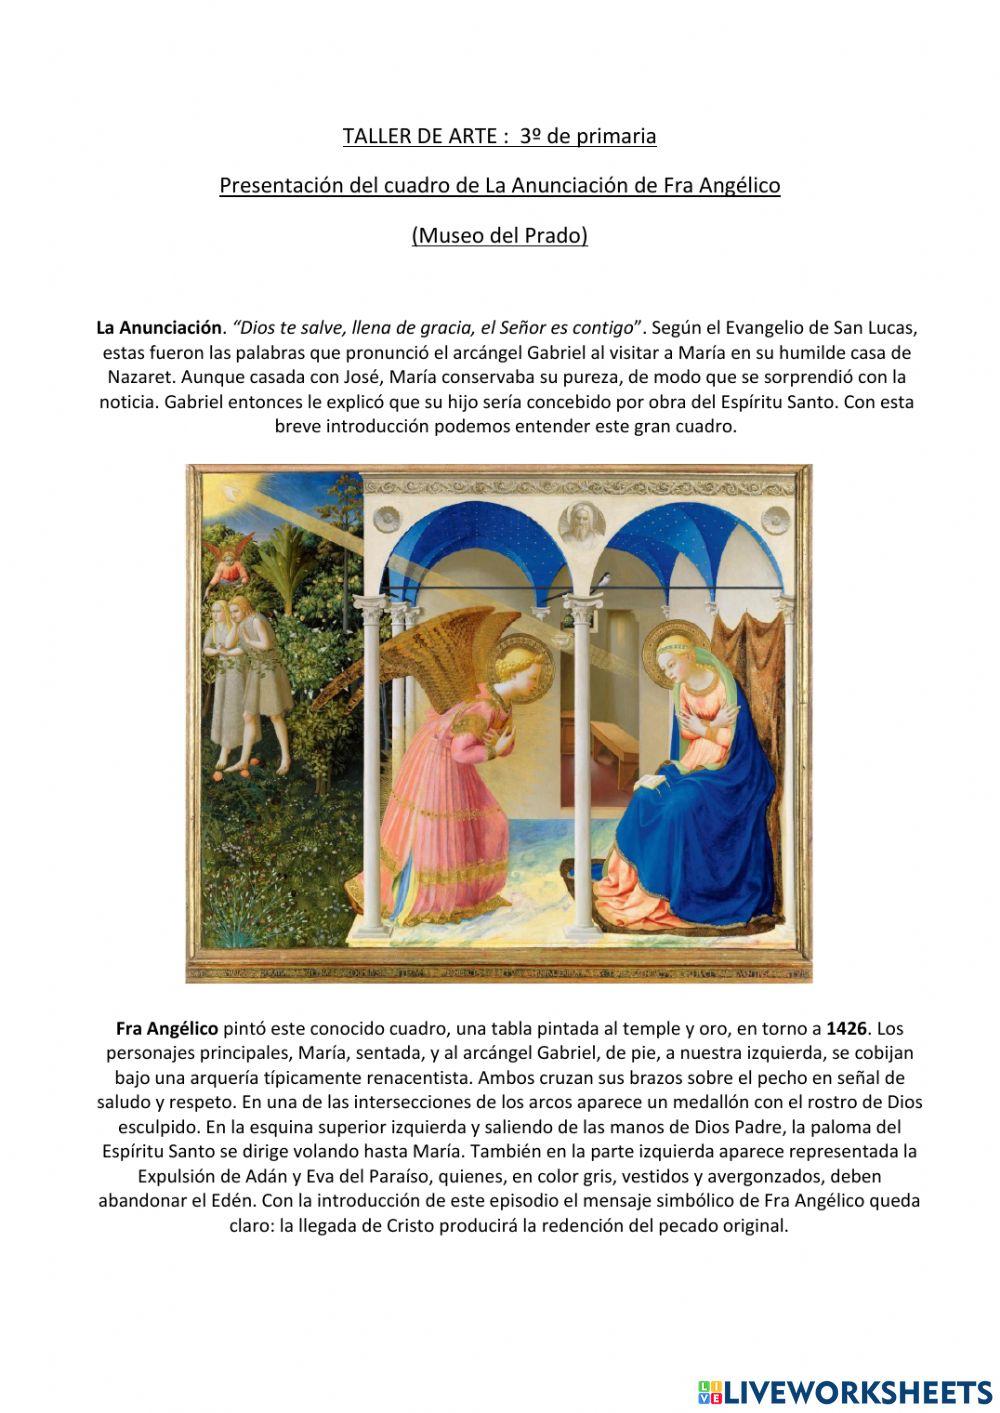 La Anunciación de Fra Angélico